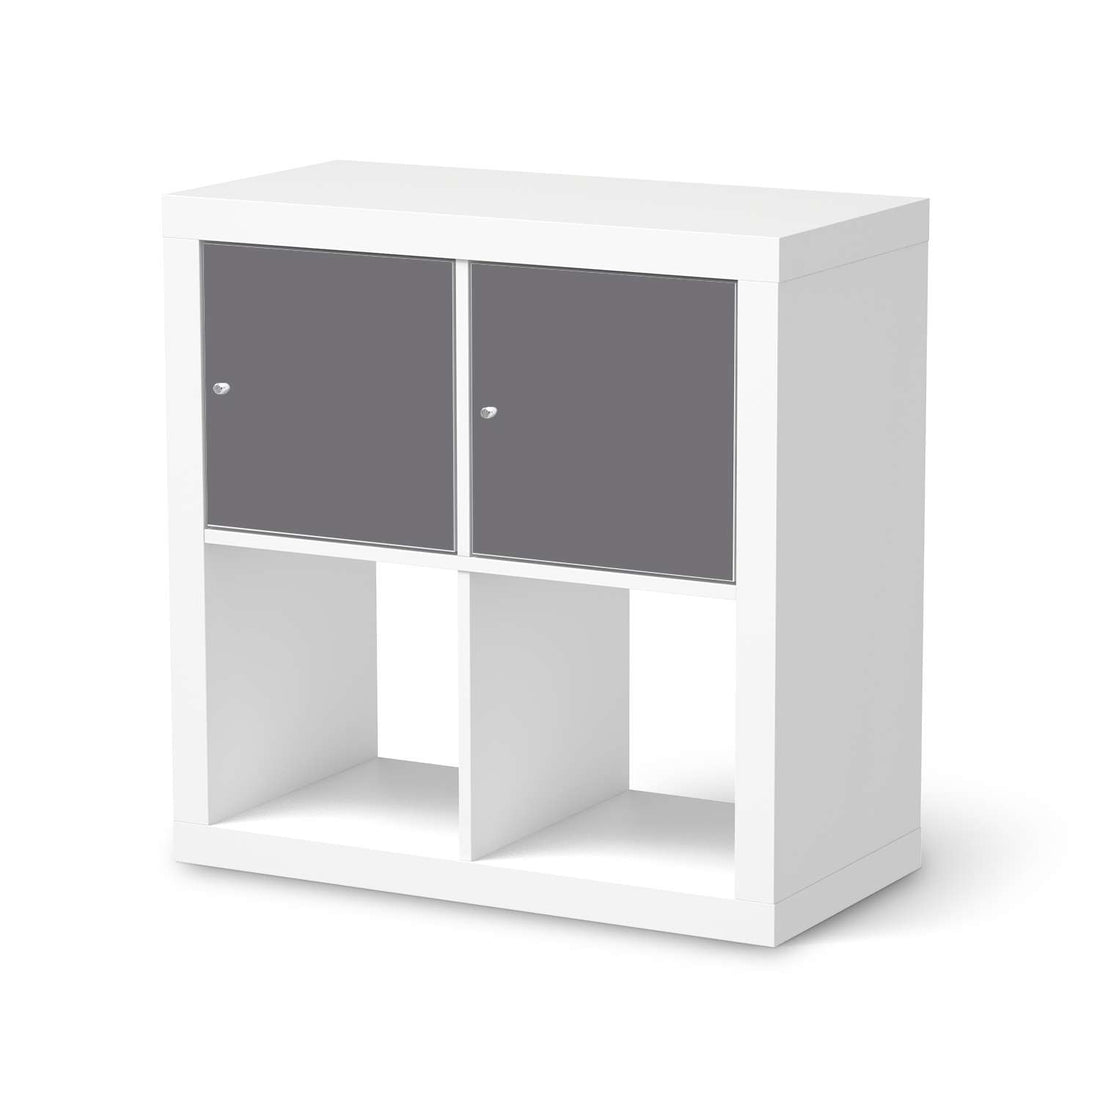 Möbelfolie Grau Light - IKEA Kallax Regal 2 Türen Quer  - weiss